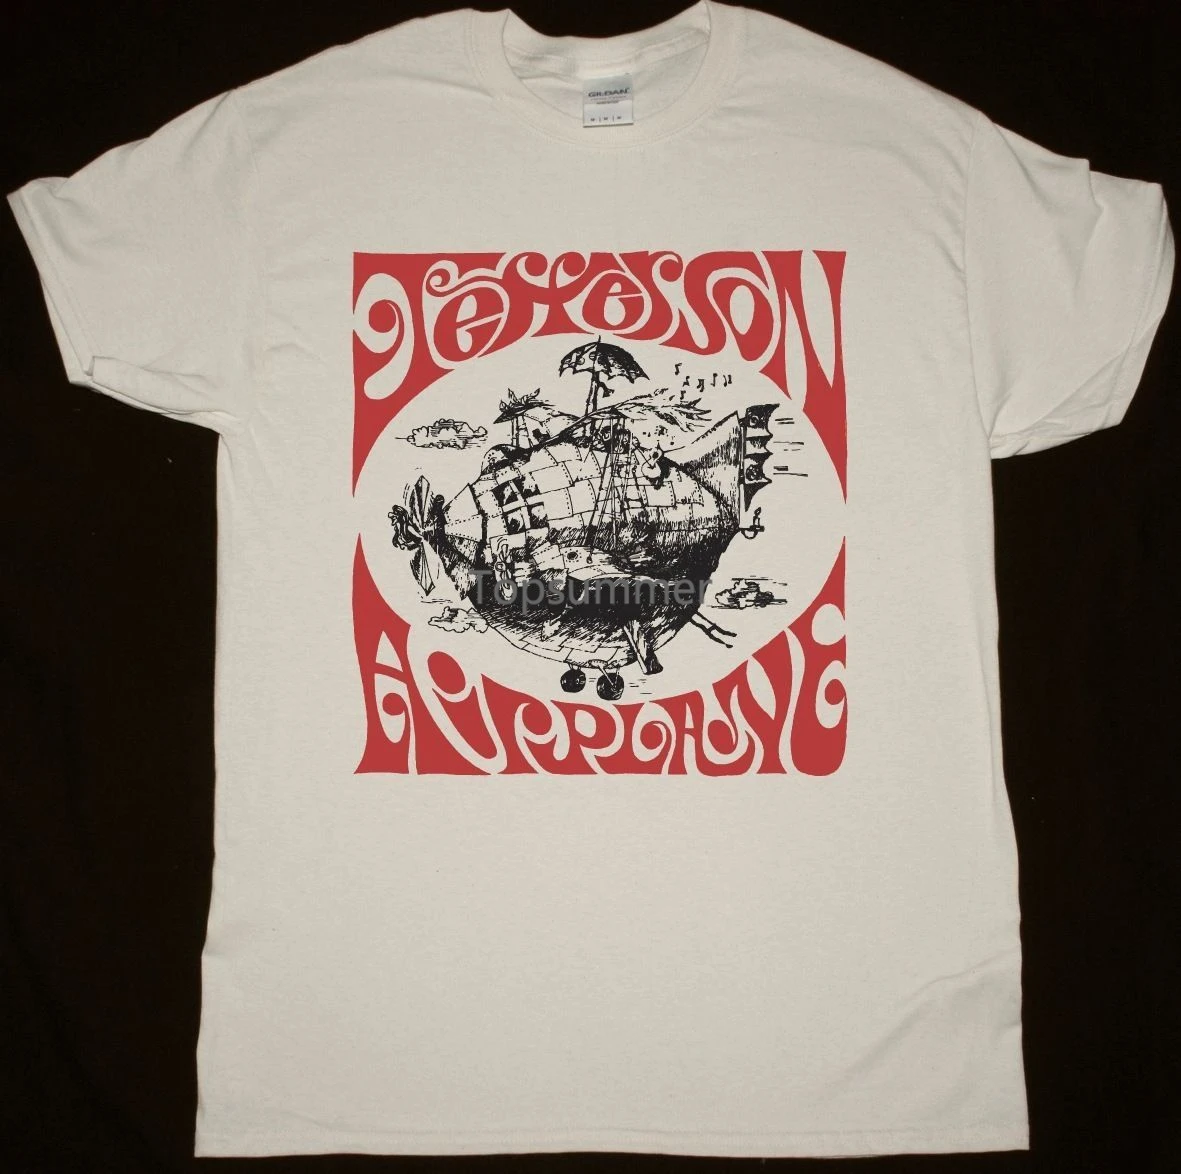 

Футболка с самолетом Джефферсона, натуральная футболка, психоделическая каменная кислота, Woodstock